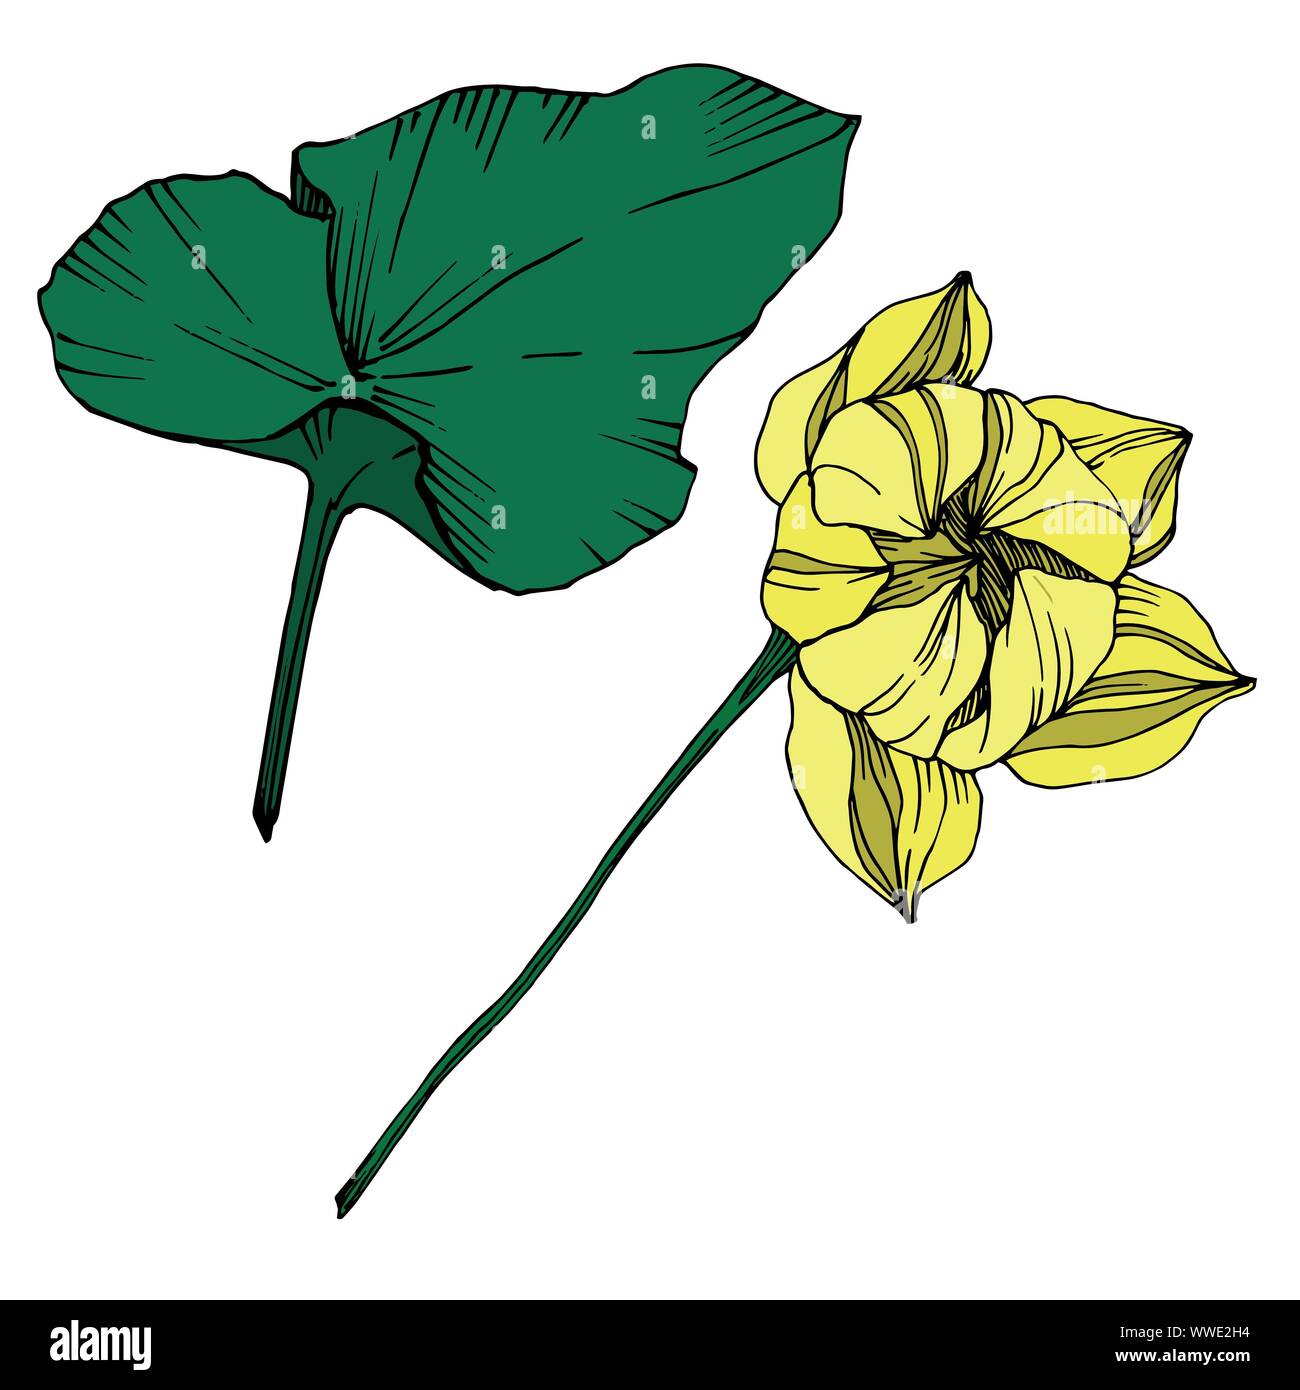 Vektor Lotus Blumen botanischen Blume. Schwarz und weiß eingraviert Tinte Art isoliert Lotus Abbildung Element. Stock Vektor